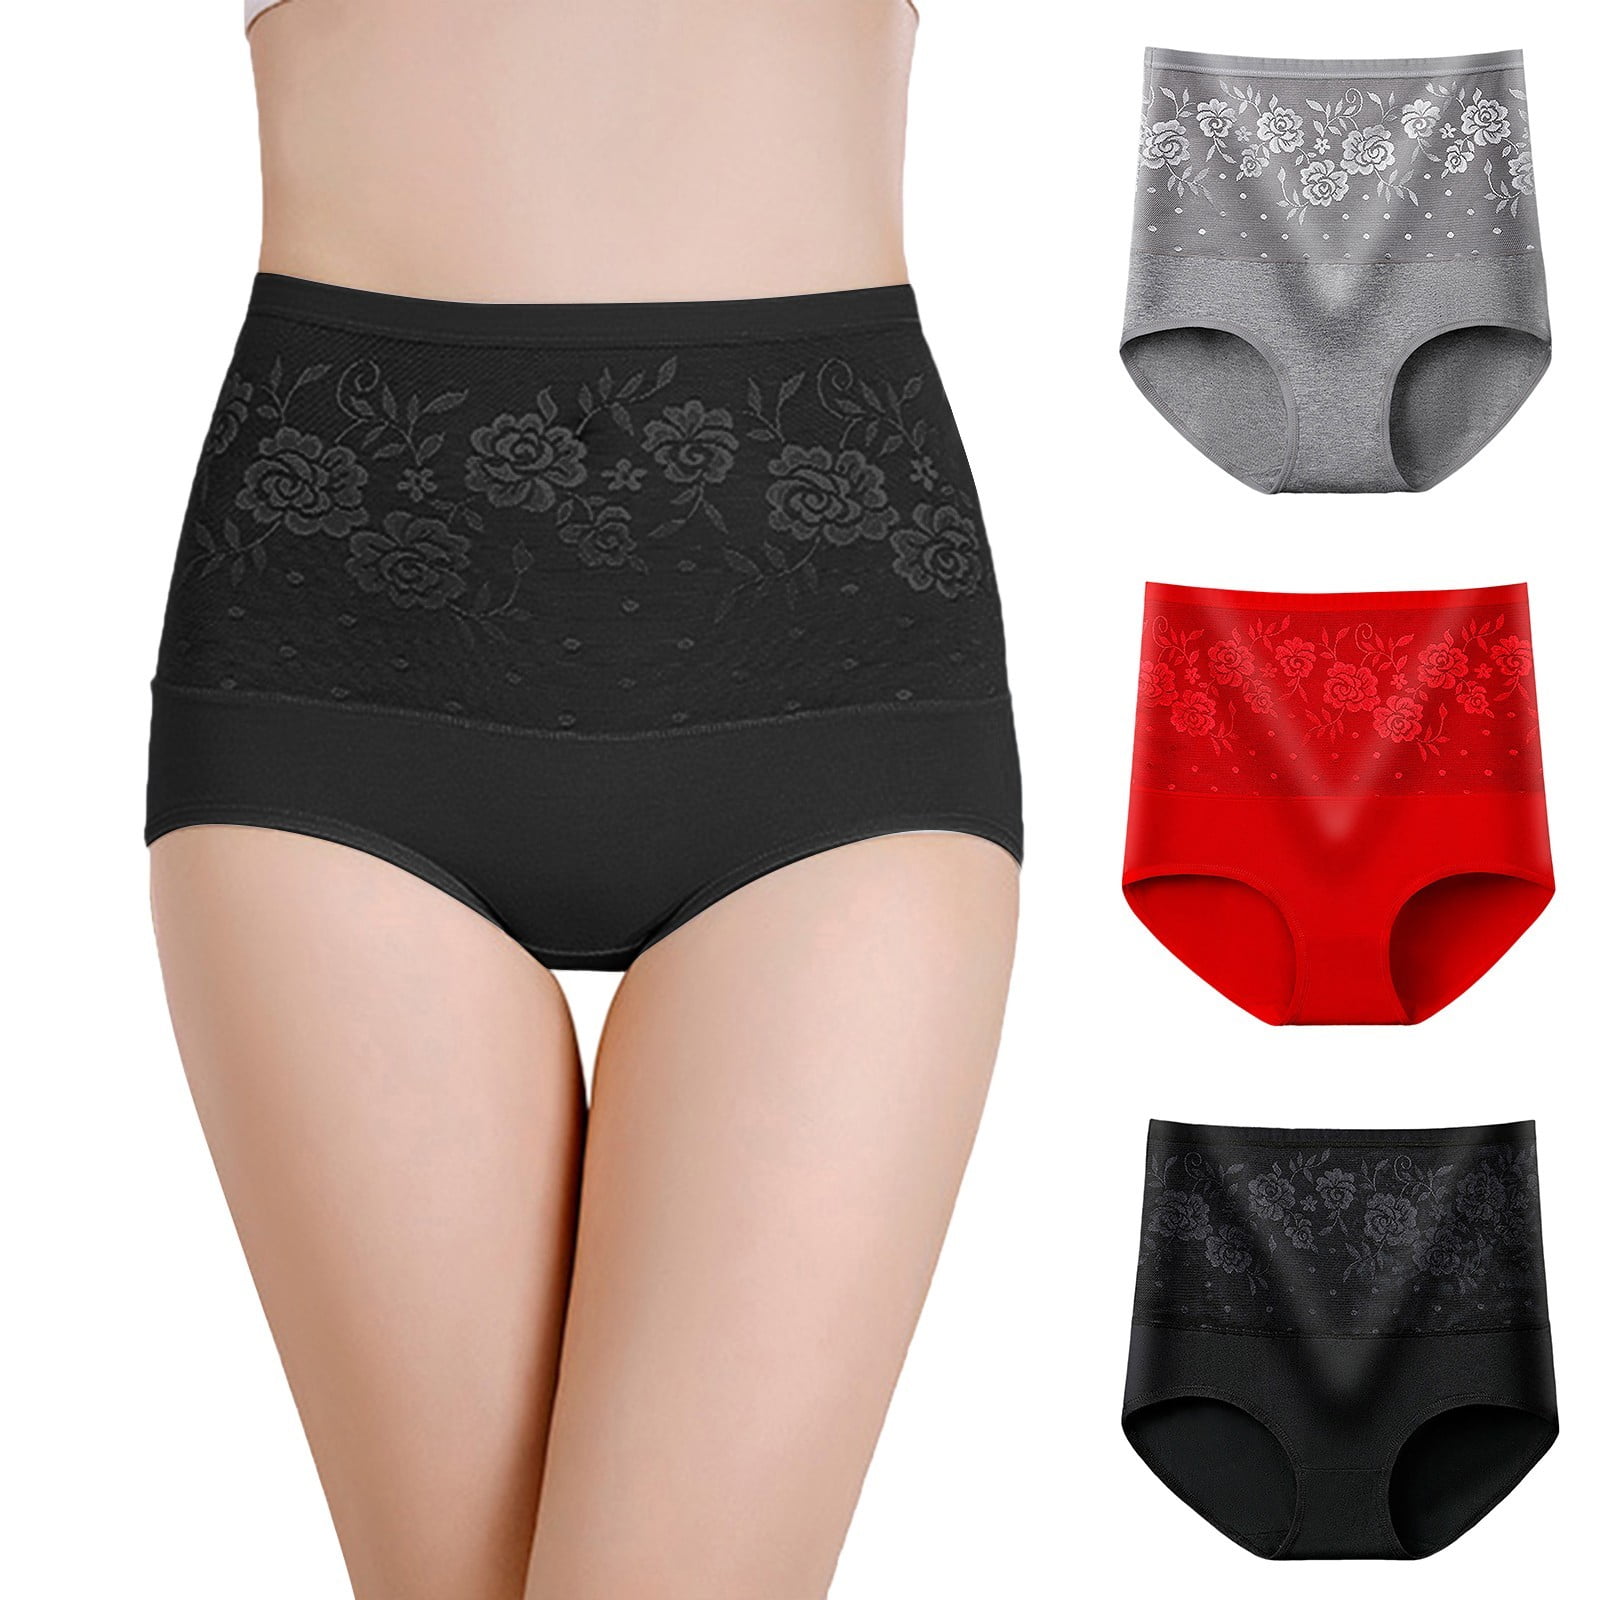 XZHGS Graphic Prints Winter underwear Packs 3 Pack Mixed Color Women's  Cotton High Waisted underwear Women underwear 